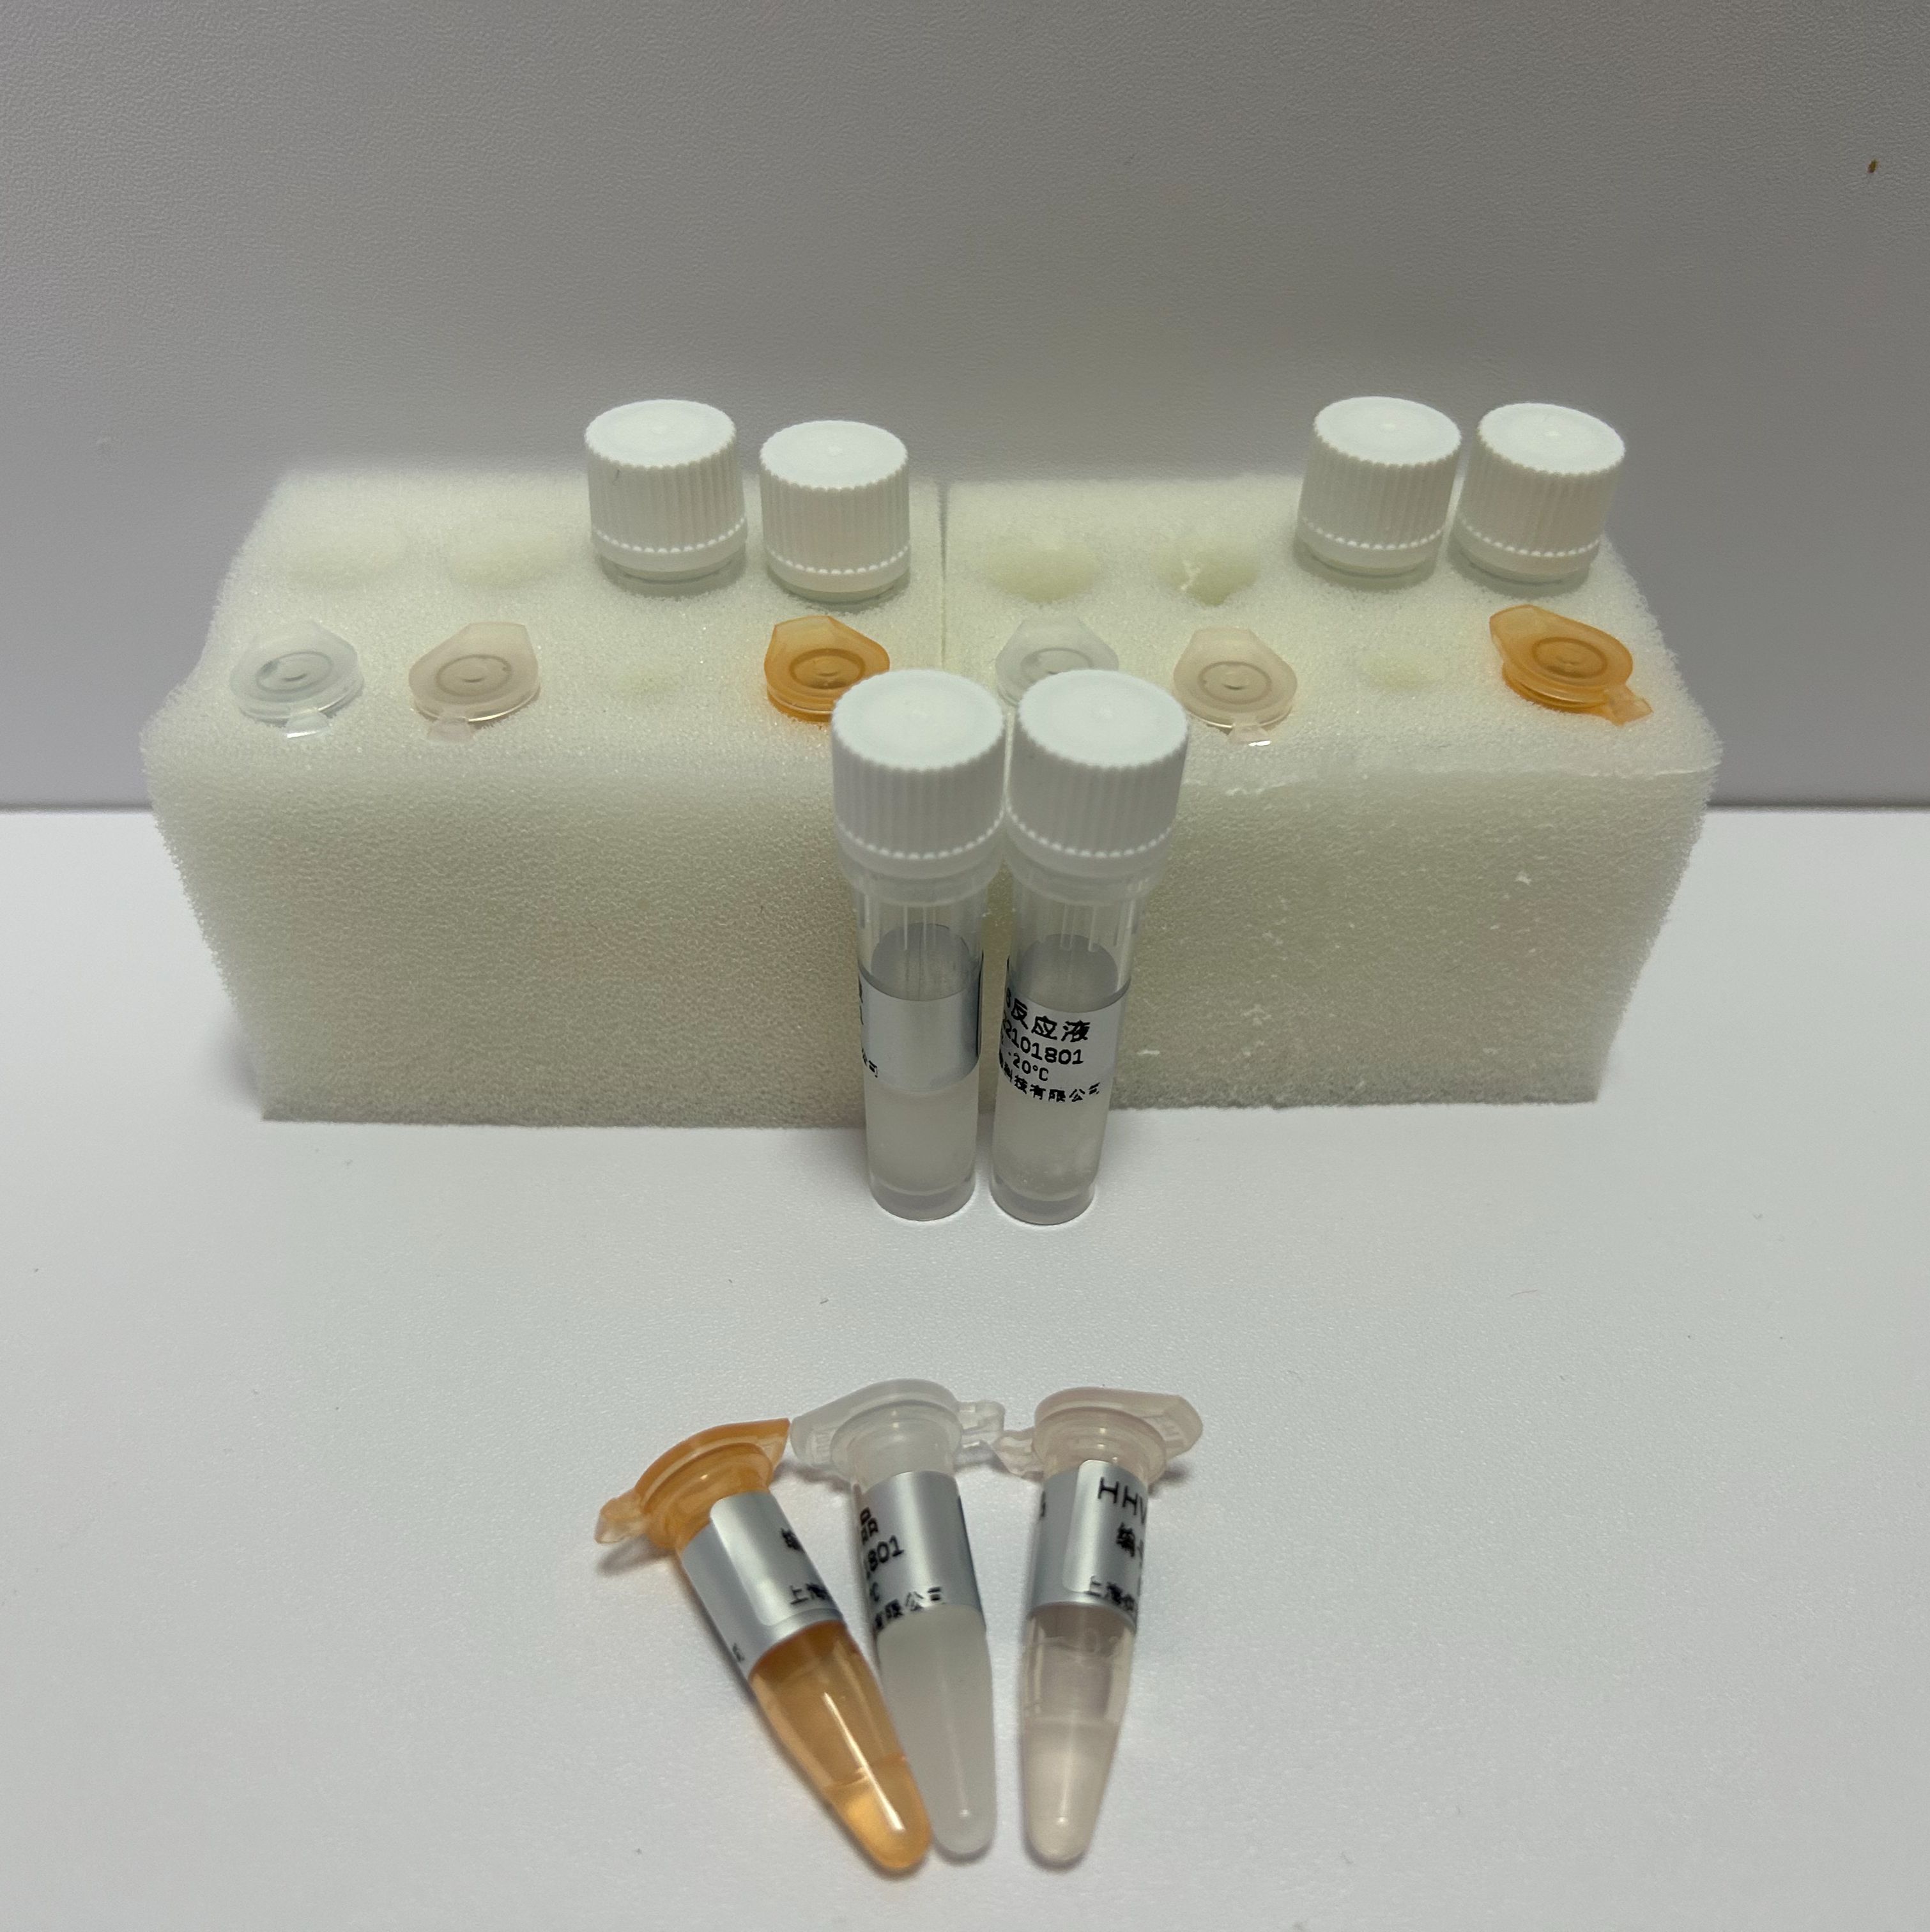 墨累谷脑炎病毒探针法荧光定量RT-PCR试剂盒